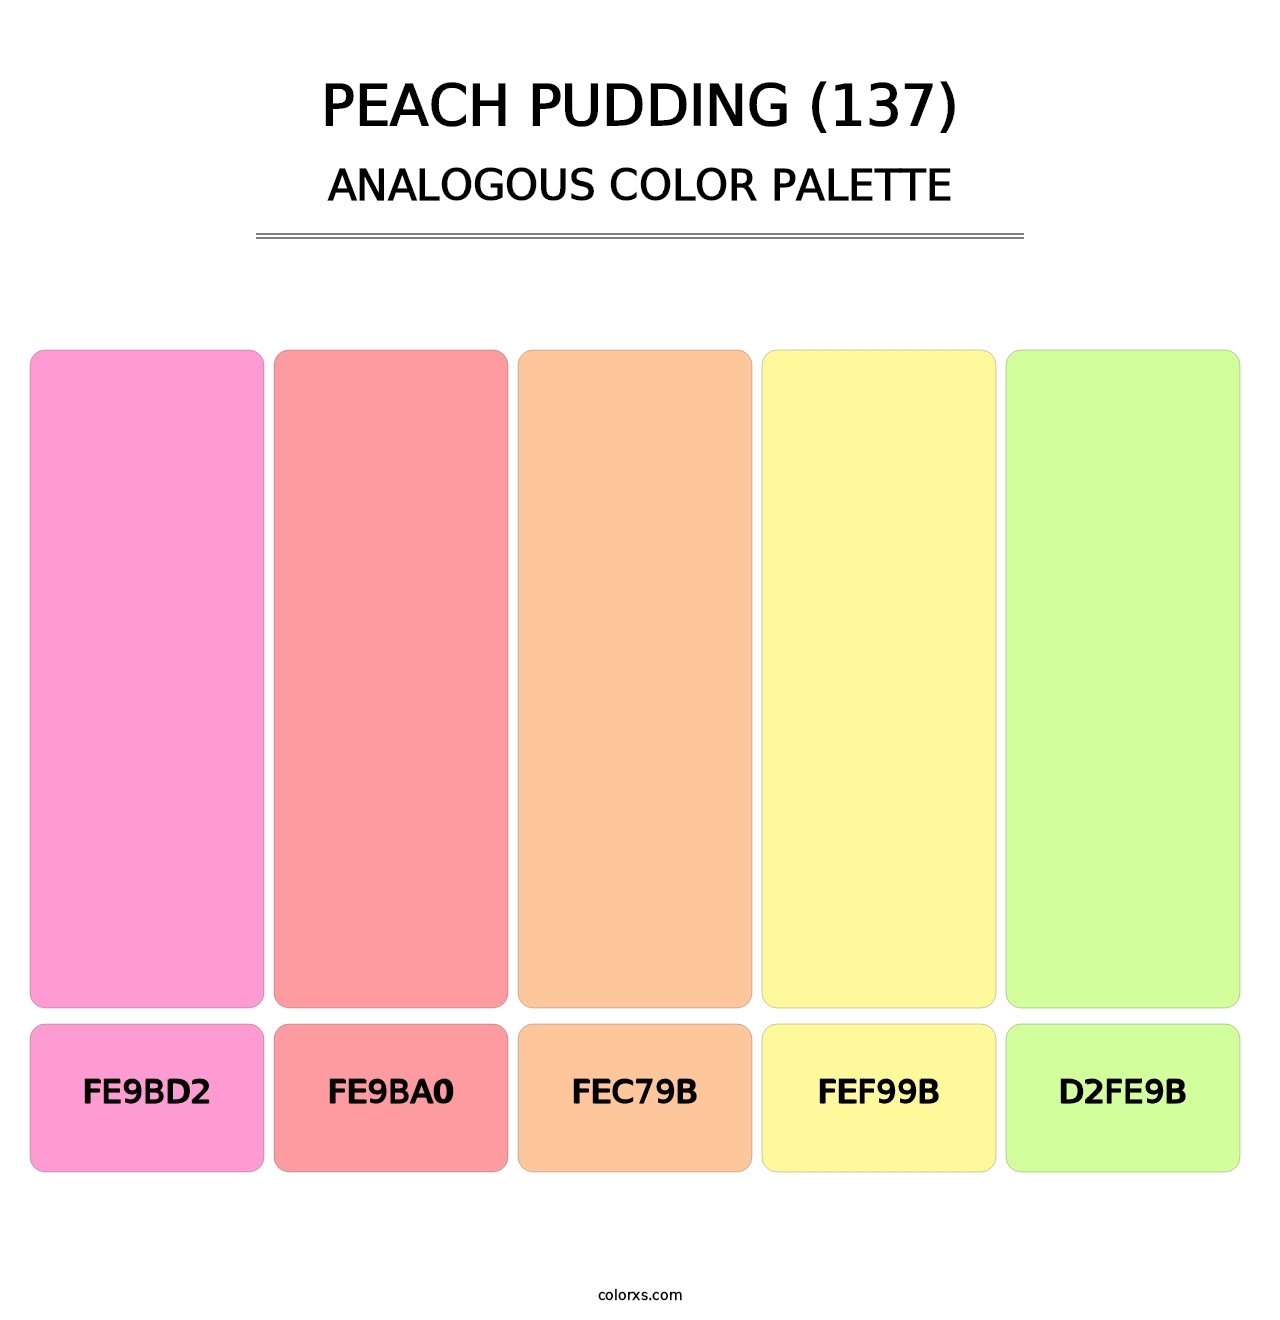 Peach Pudding (137) - Analogous Color Palette